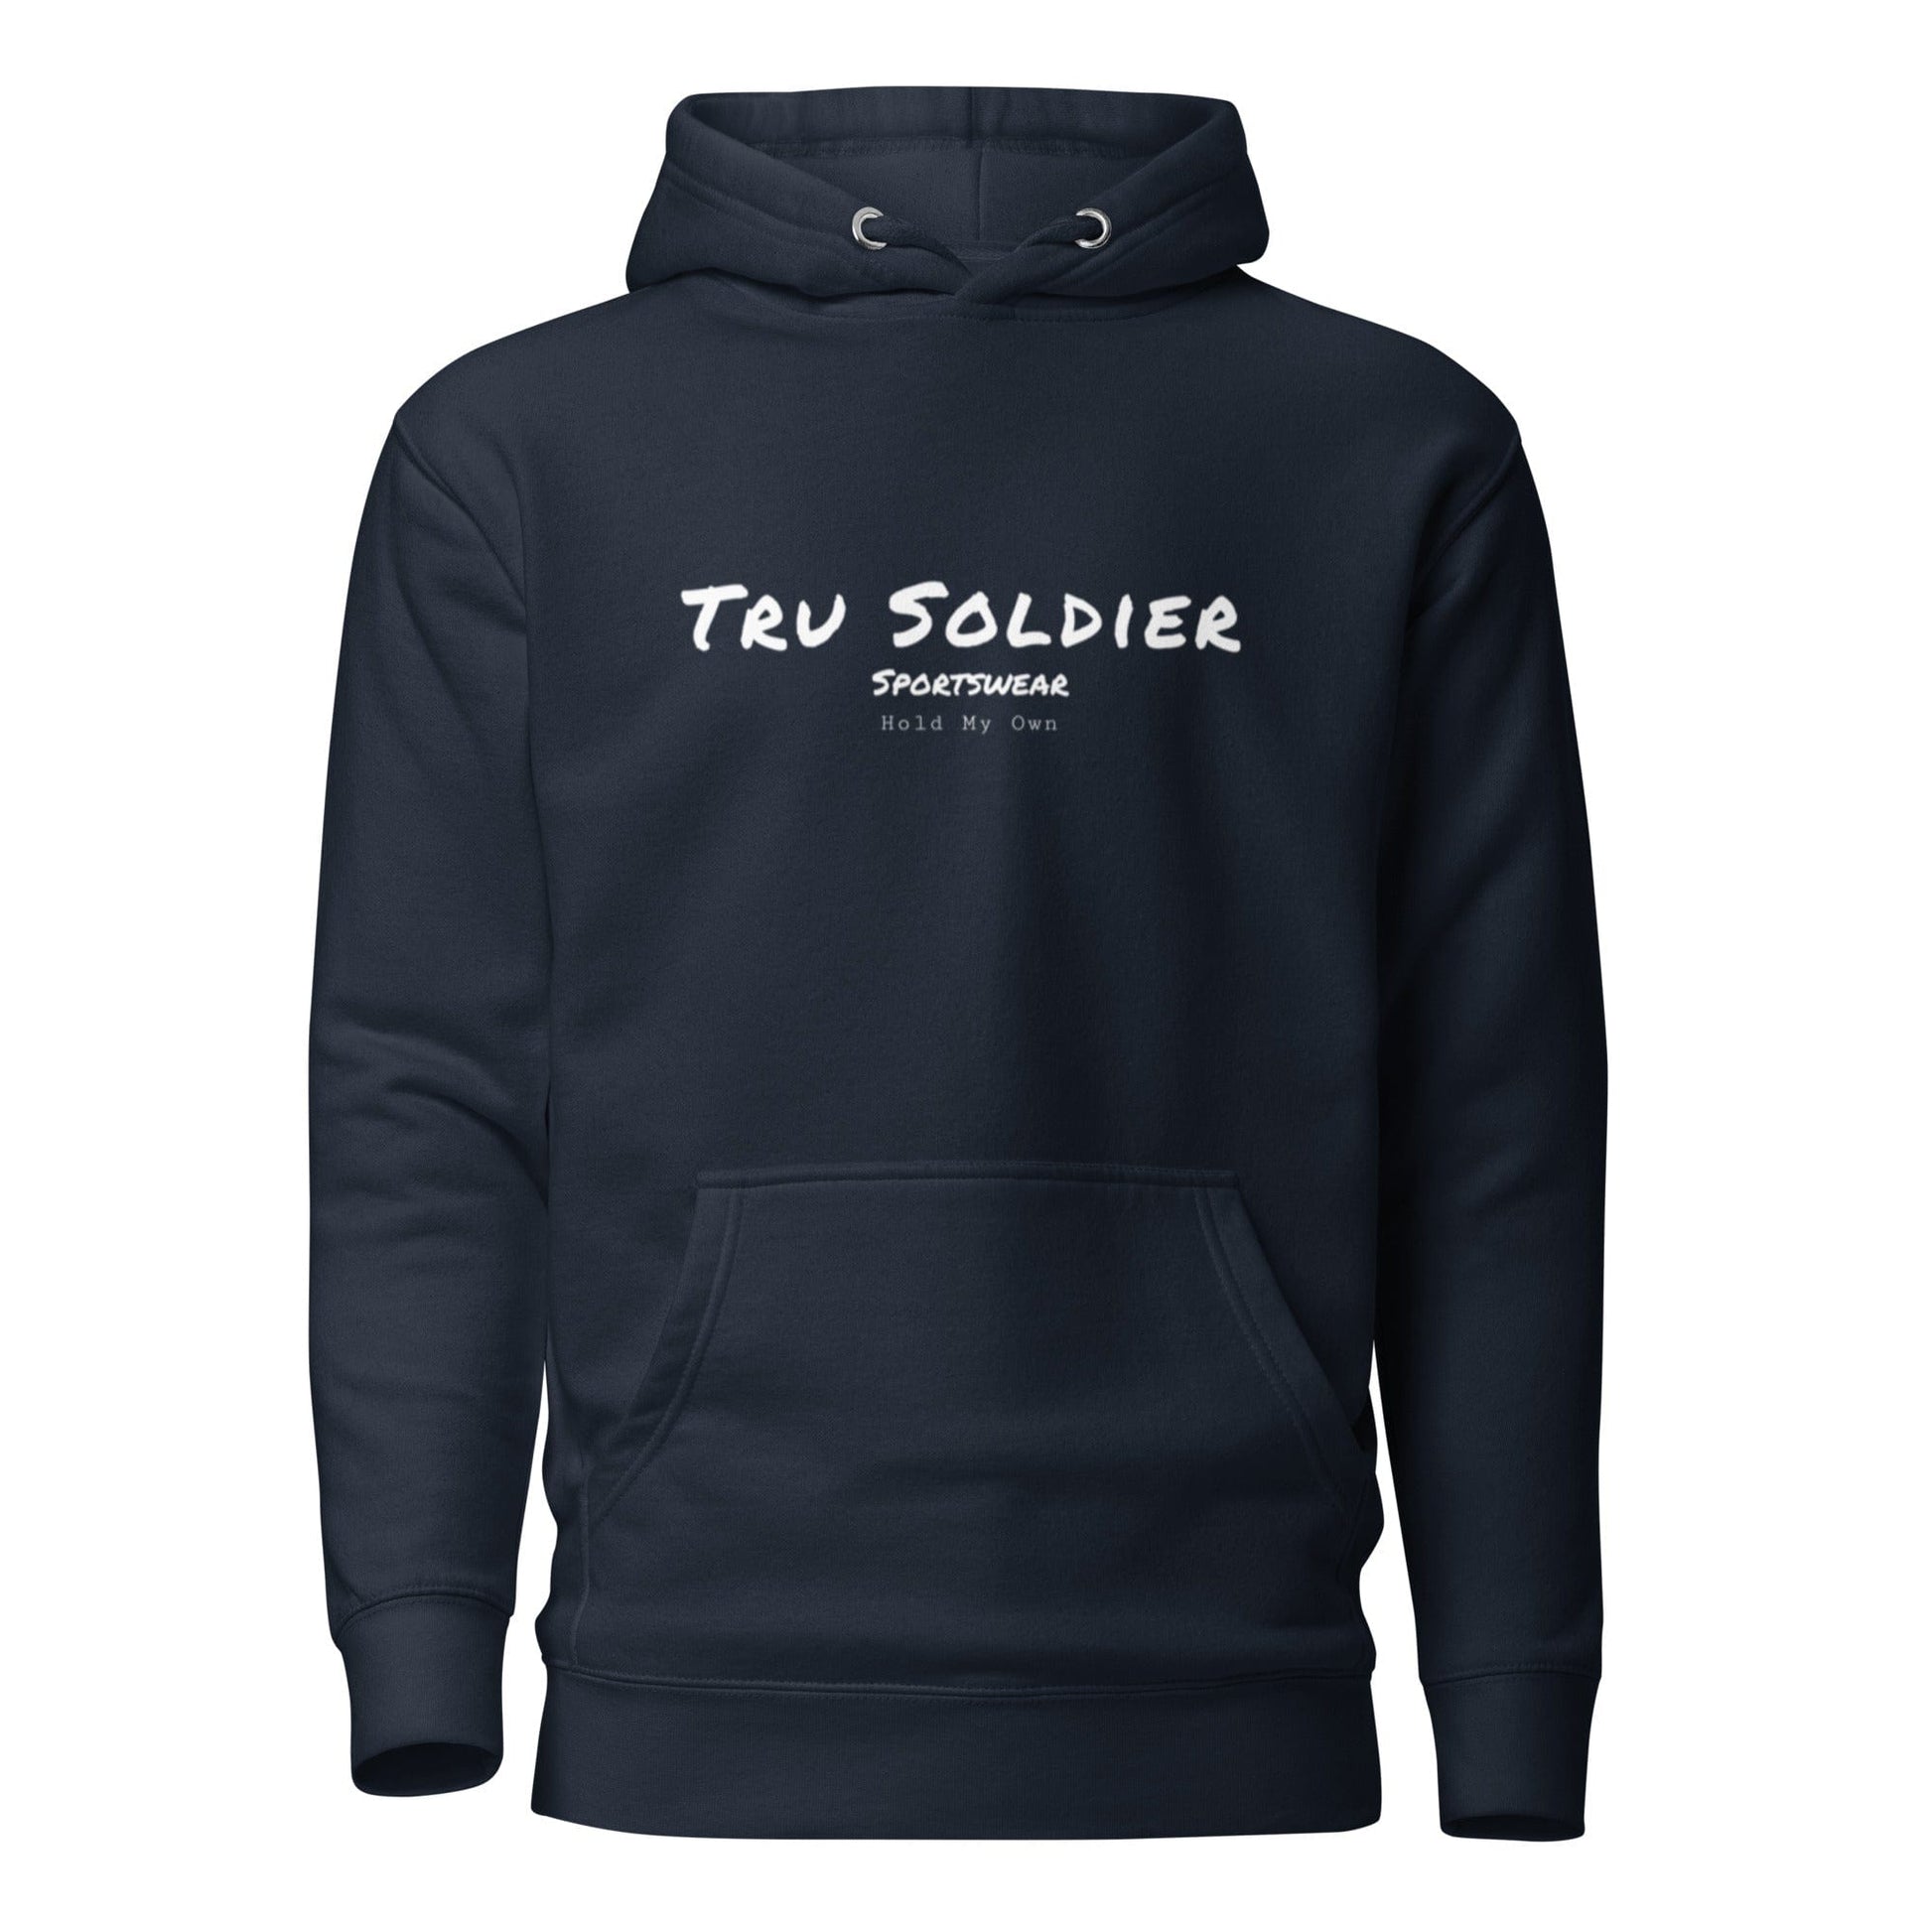 Tru Soldier Sportswear  Navy Blazer / S Signature Hoodie